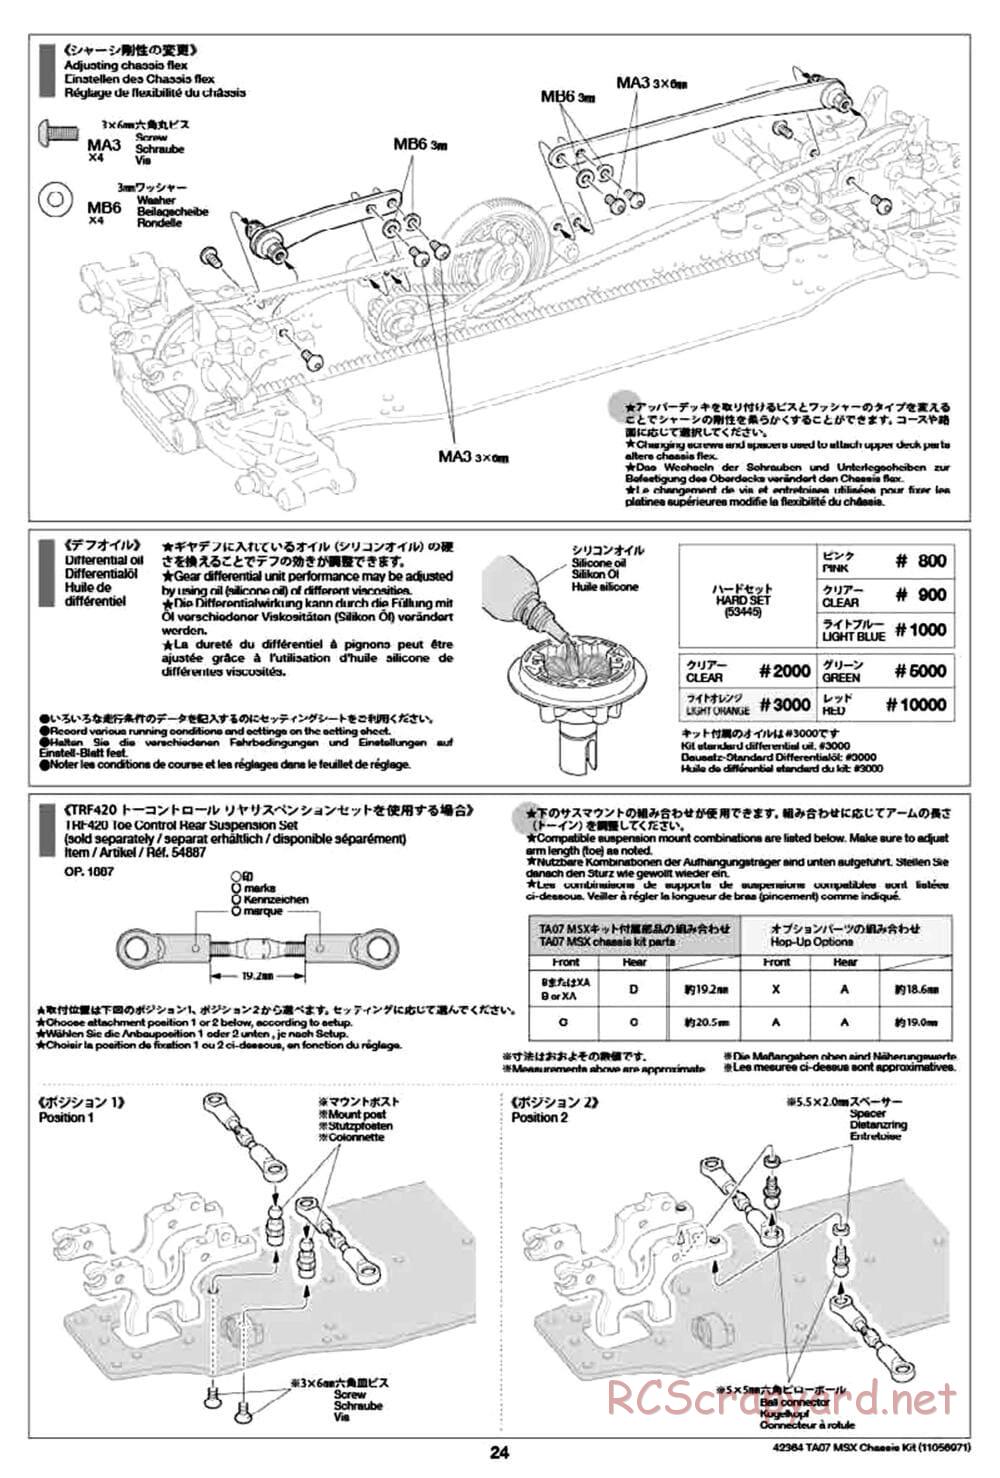 Tamiya - TA07 MSX Chassis - Manual - Page 24